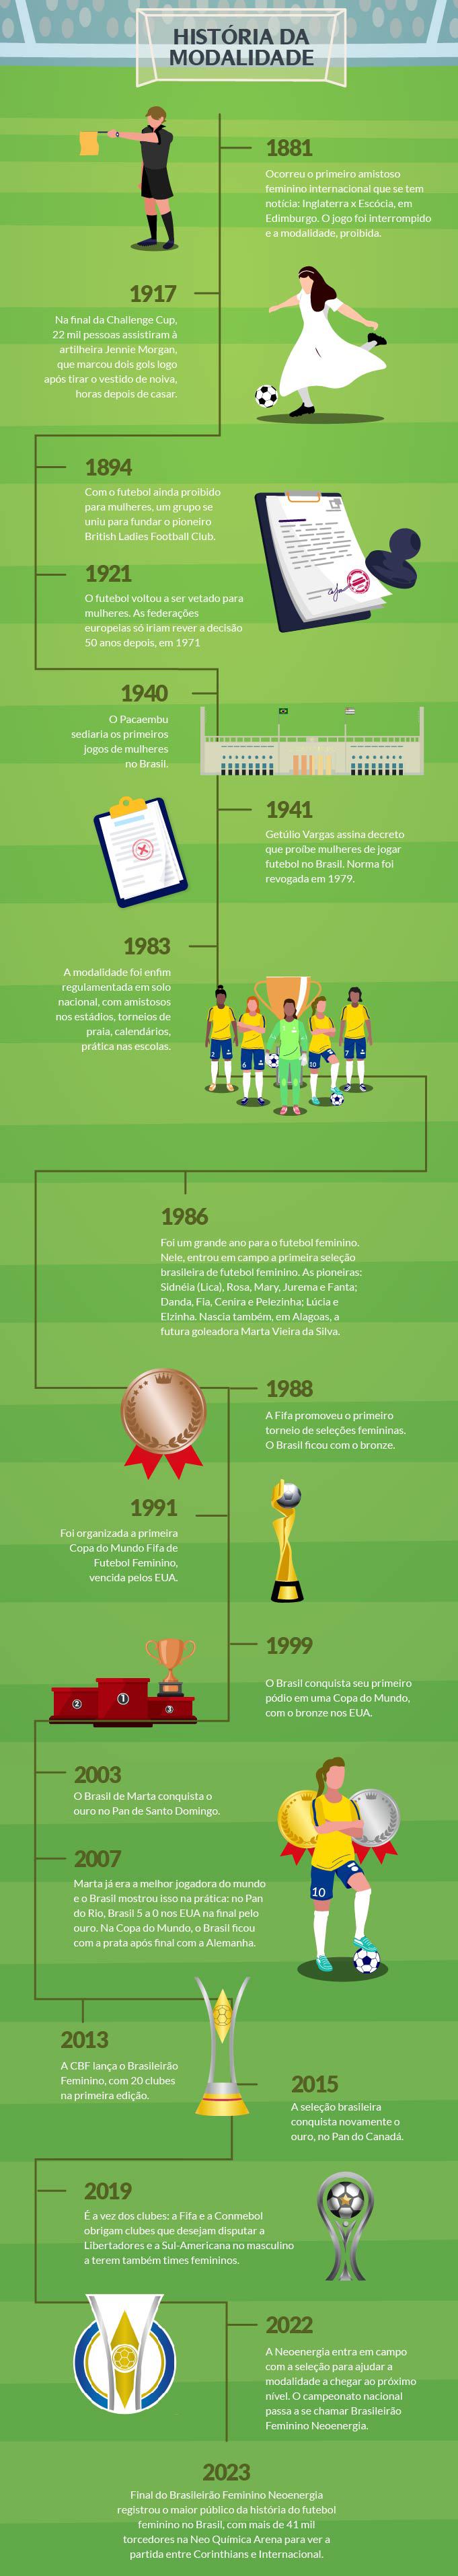 A História do Futebol Feminino - Neoenergia